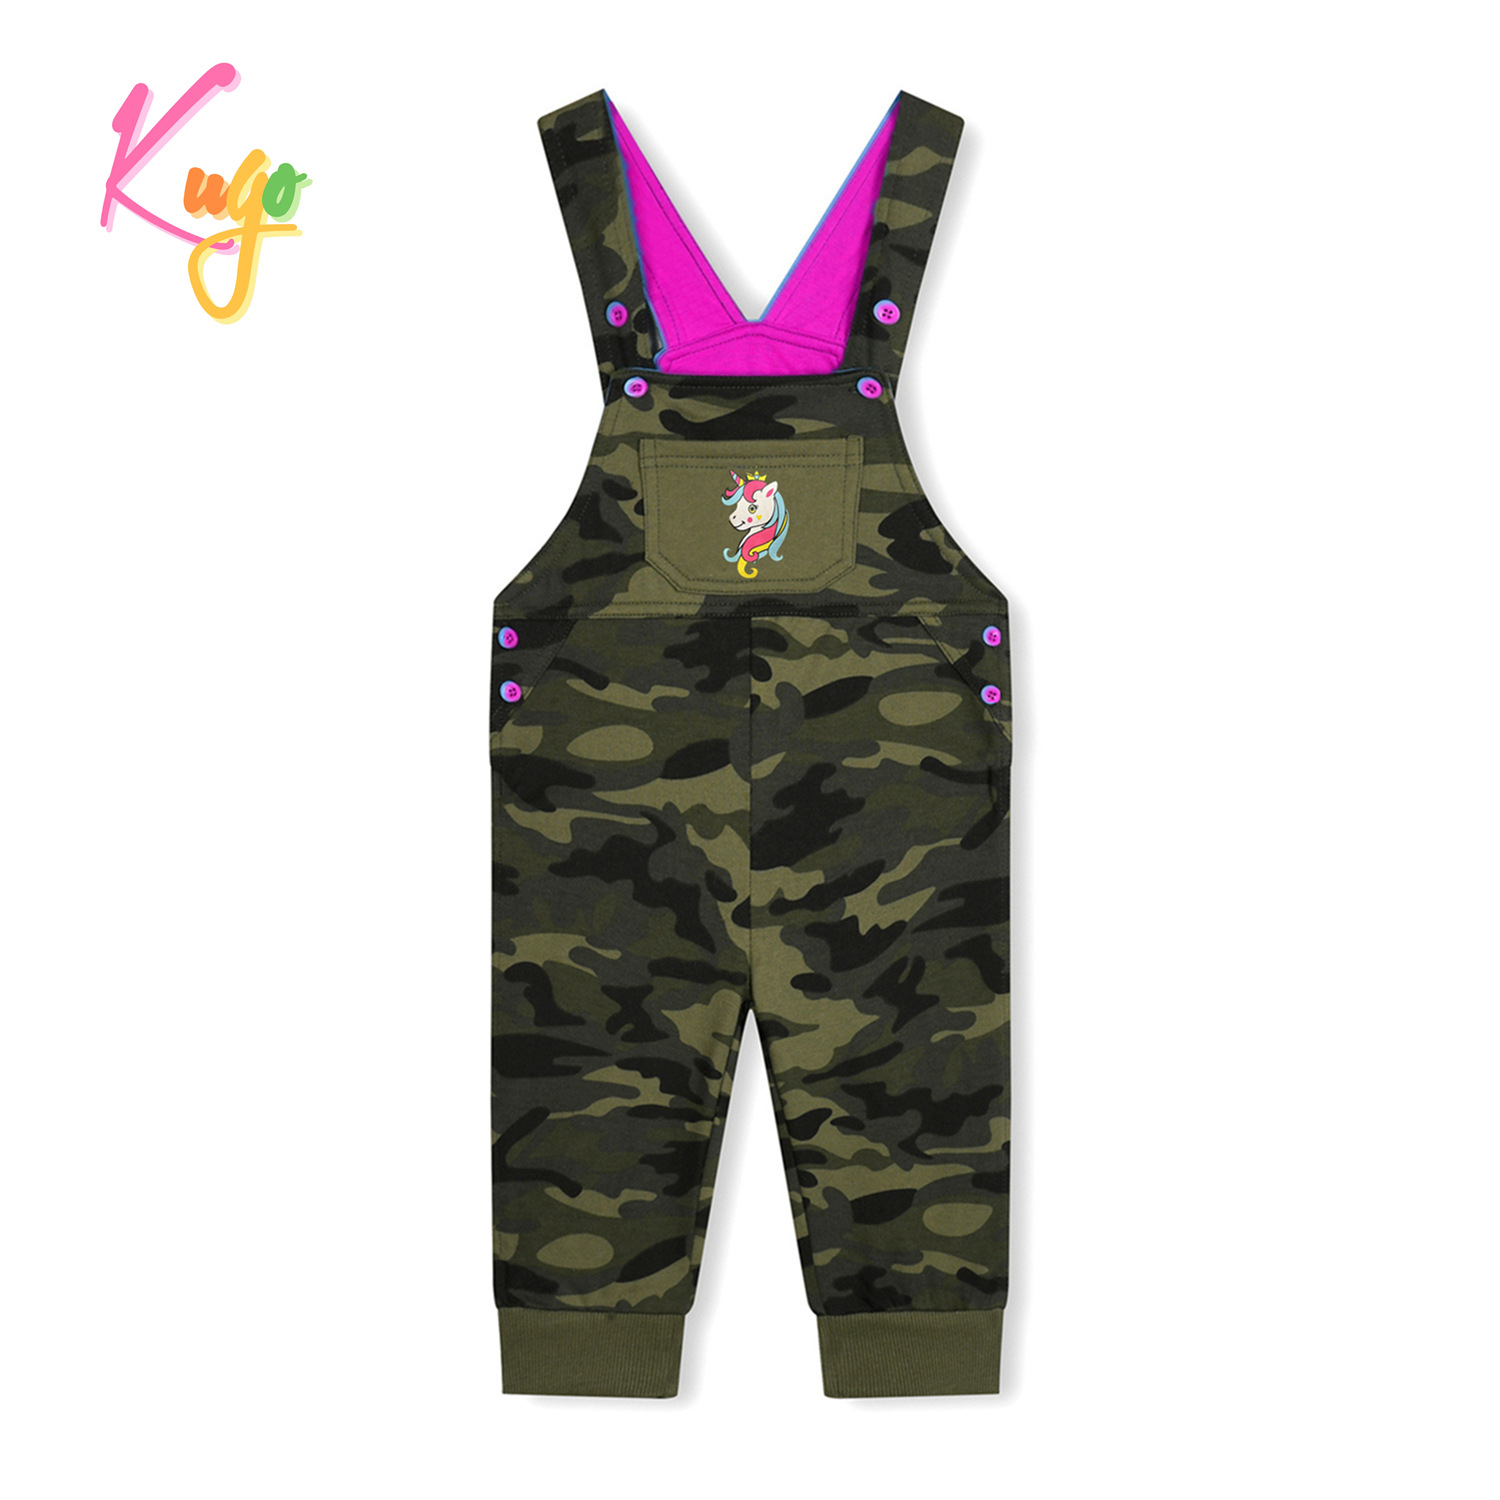 Dětské laclové tepláky - KUGO ST7733, maskáč/ růžová aplikace Barva: Khaki, Velikost: 74